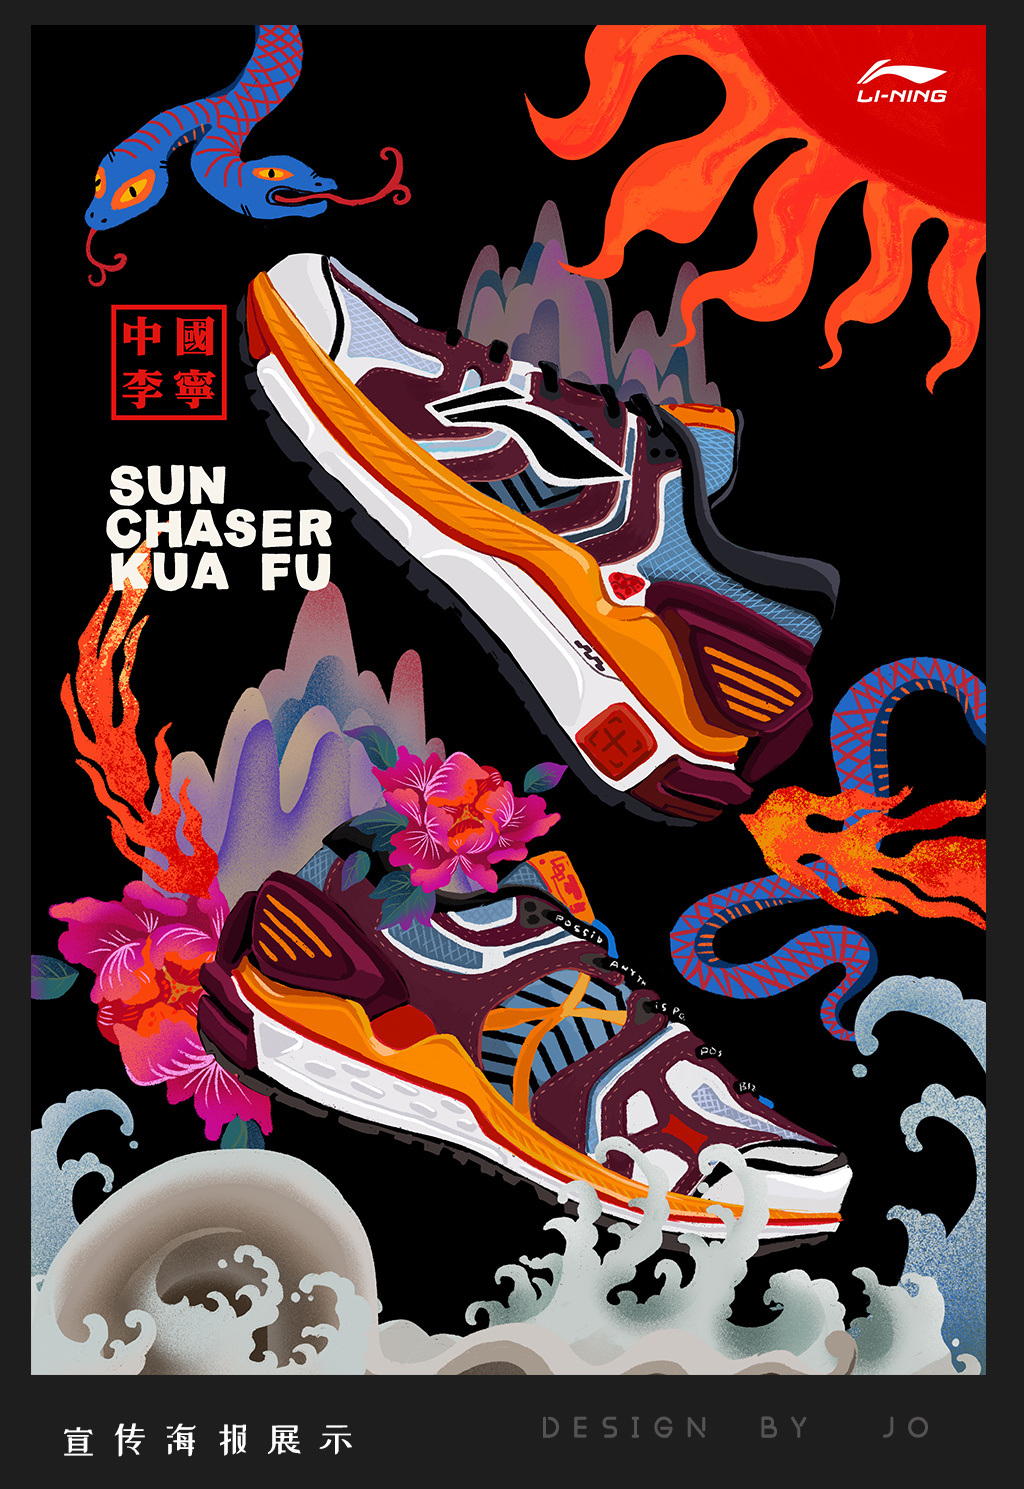 中国李宁 sun chaser 夸父系列跑鞋 创意插画动画